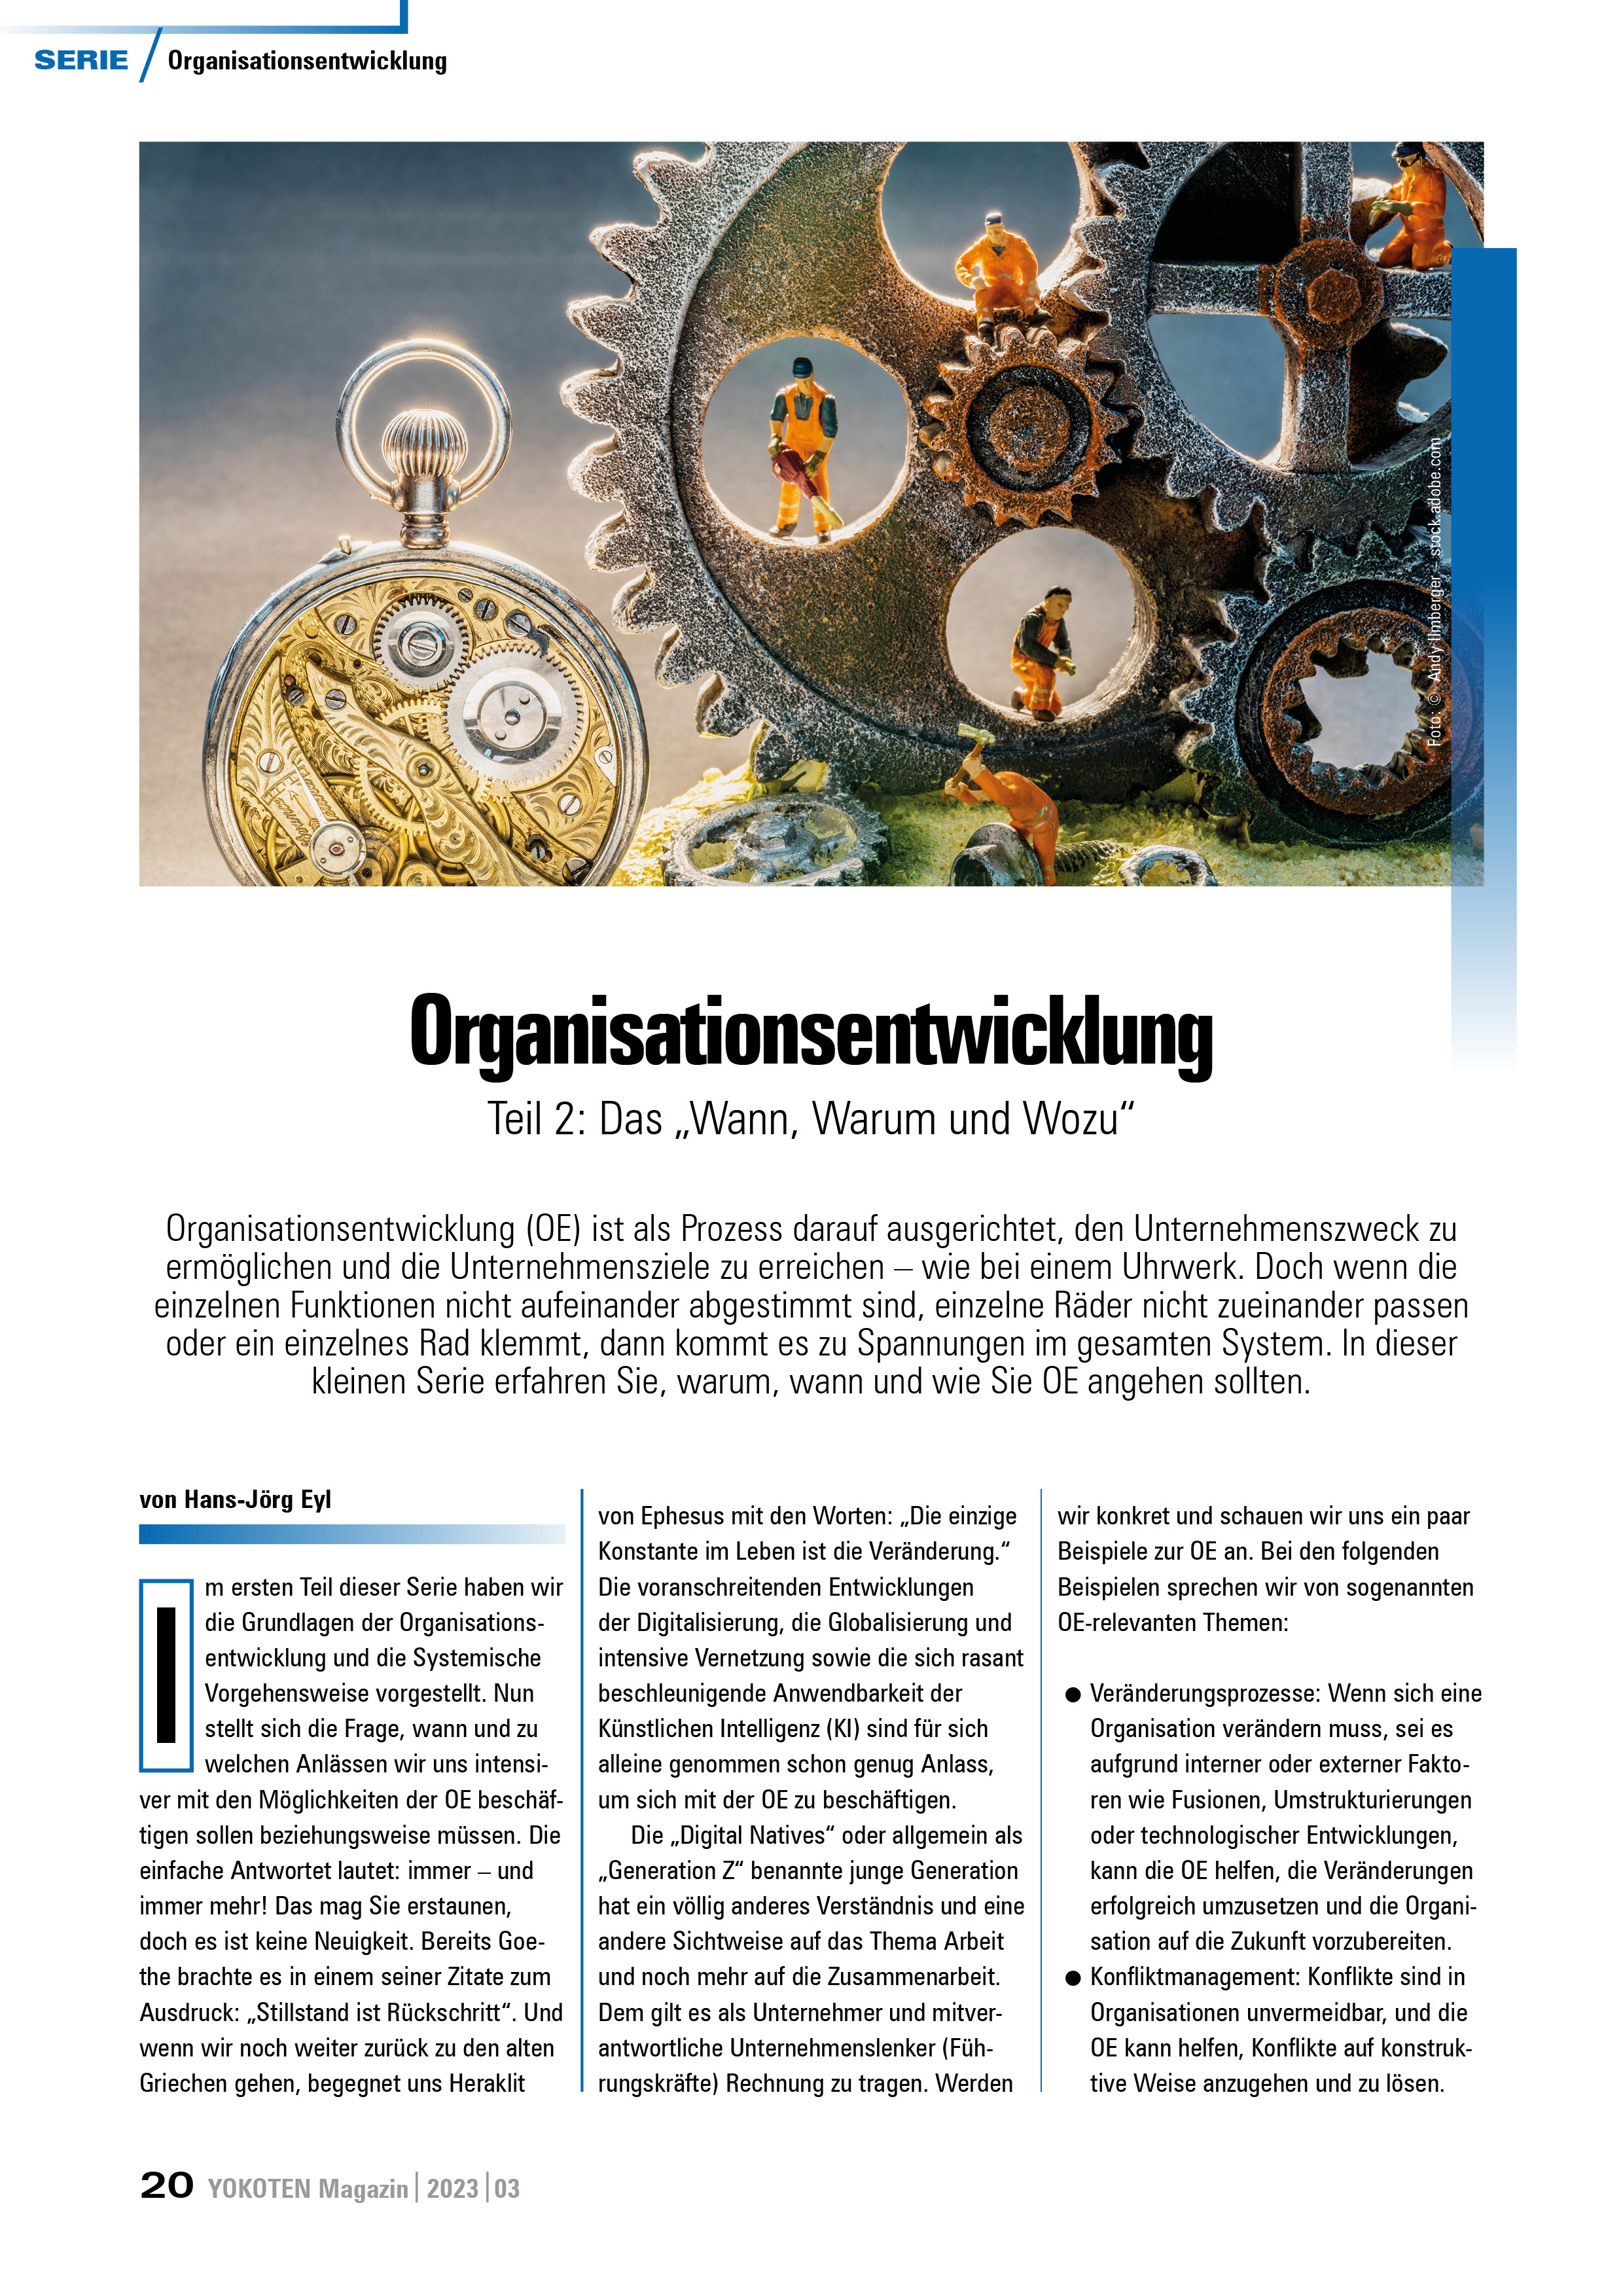 Organisationsentwicklung - Teil 2 - Artikel aus Fachmagazin YOKOTEN 2023-03